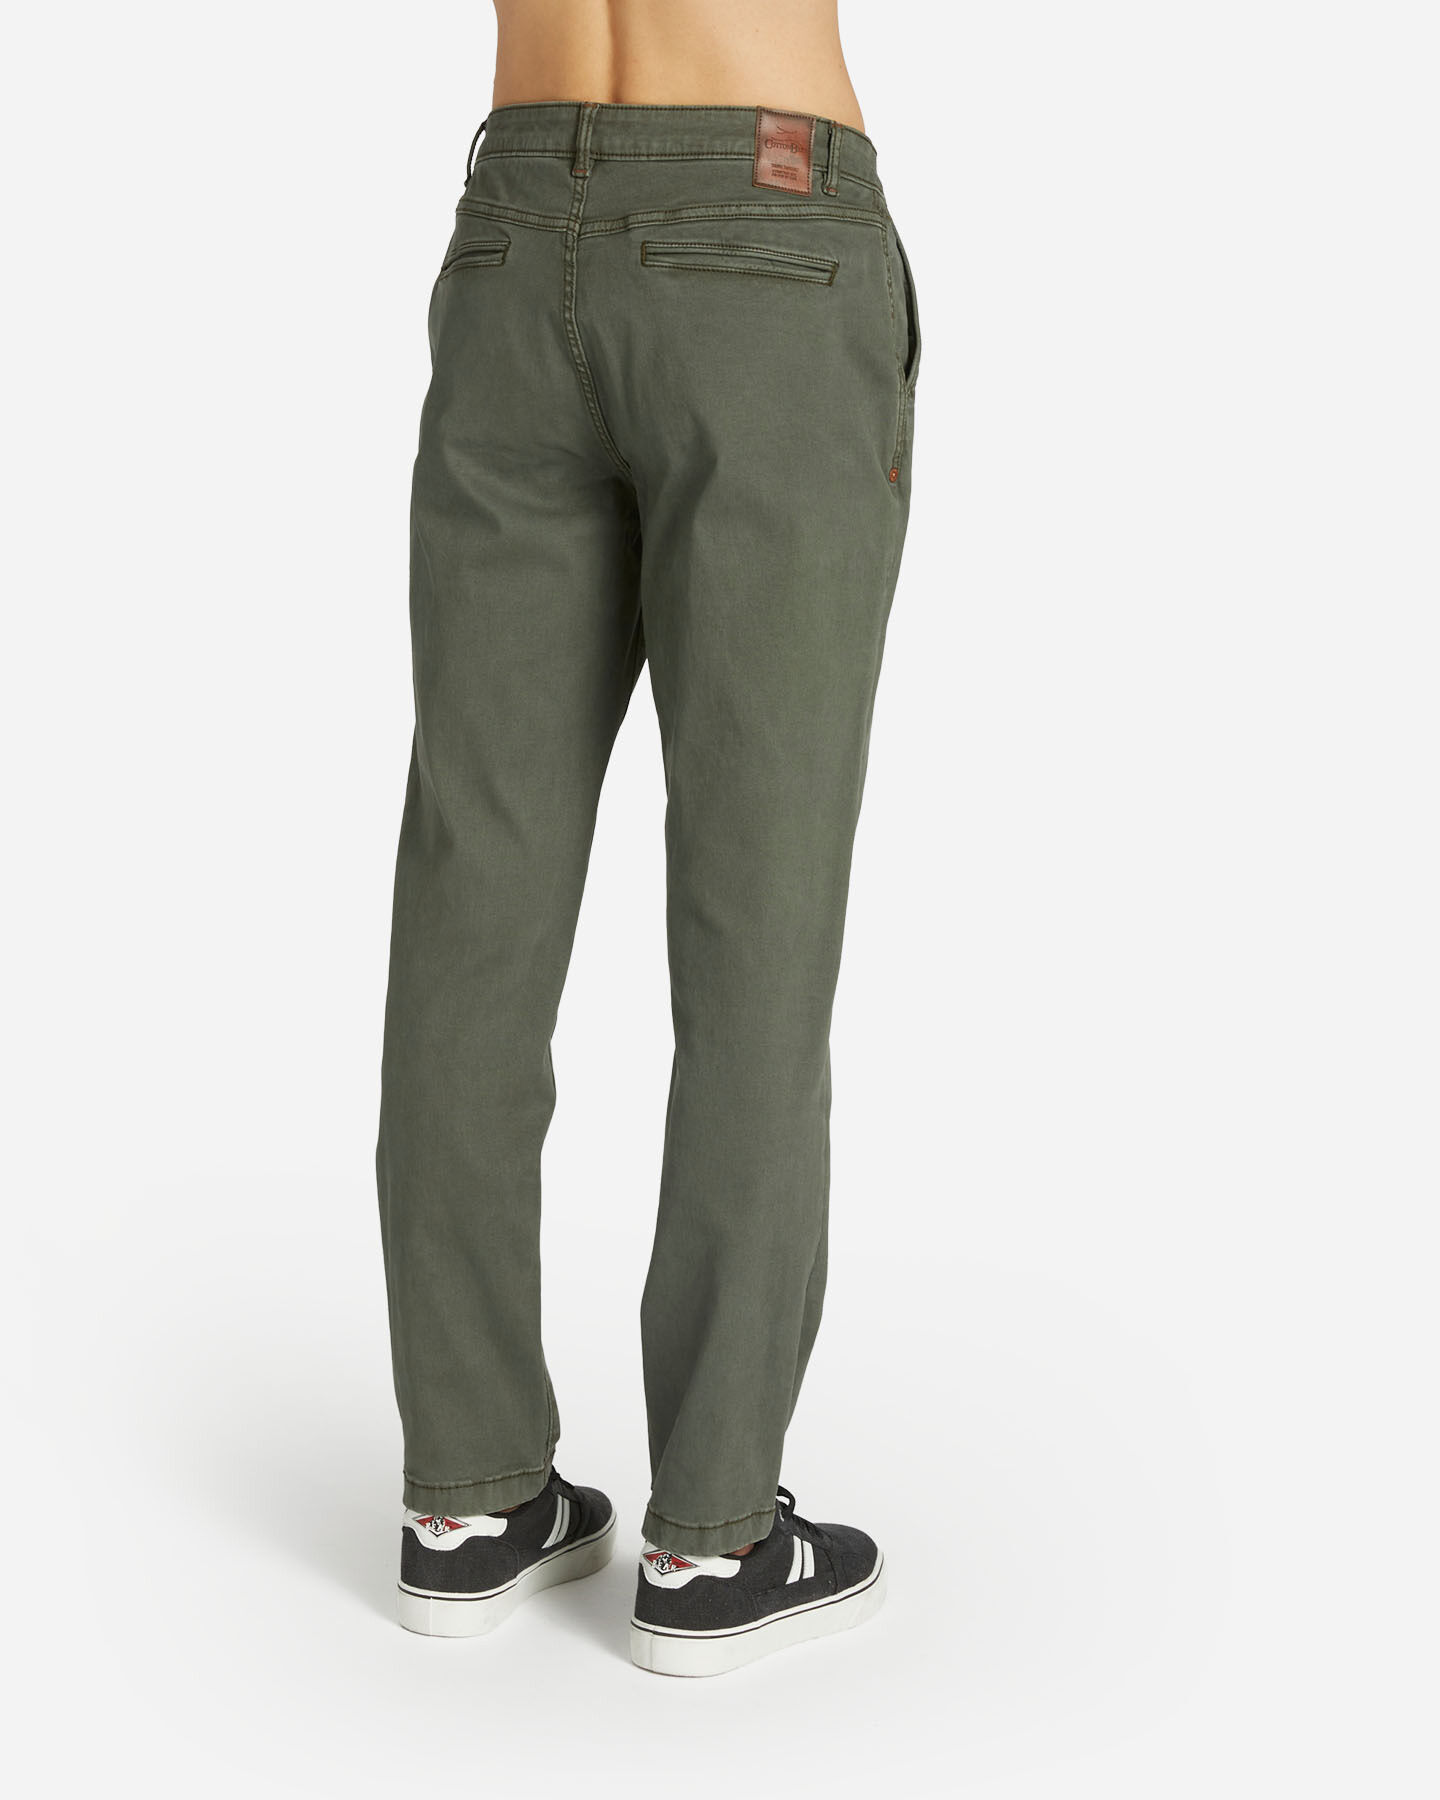  Pantalone COTTON BELT CHINO HYBRID M S4127003|043A|32 scatto 1